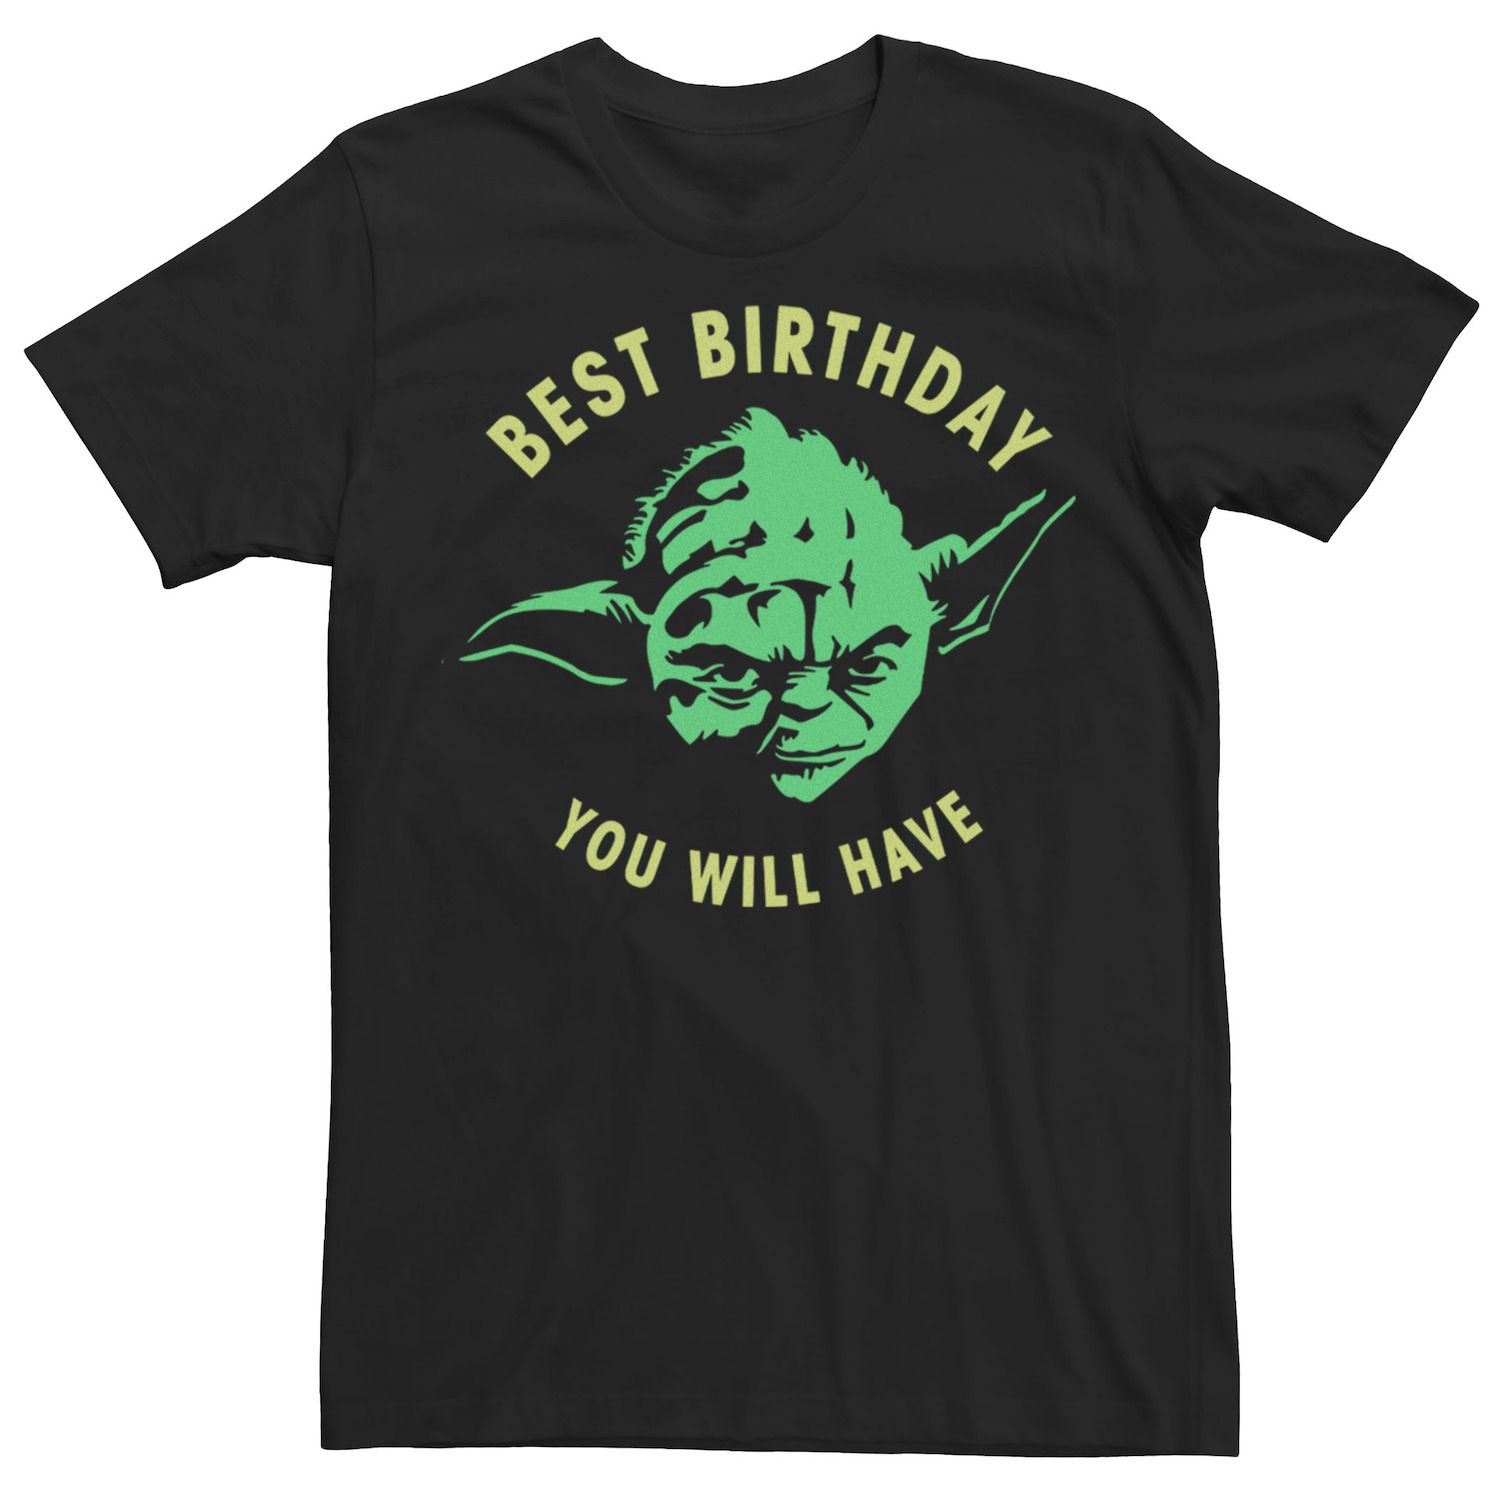 Мужская футболка с рисунком на день рождения Yoda Star Wars мужская футболка день рождения белый контур m зеленый